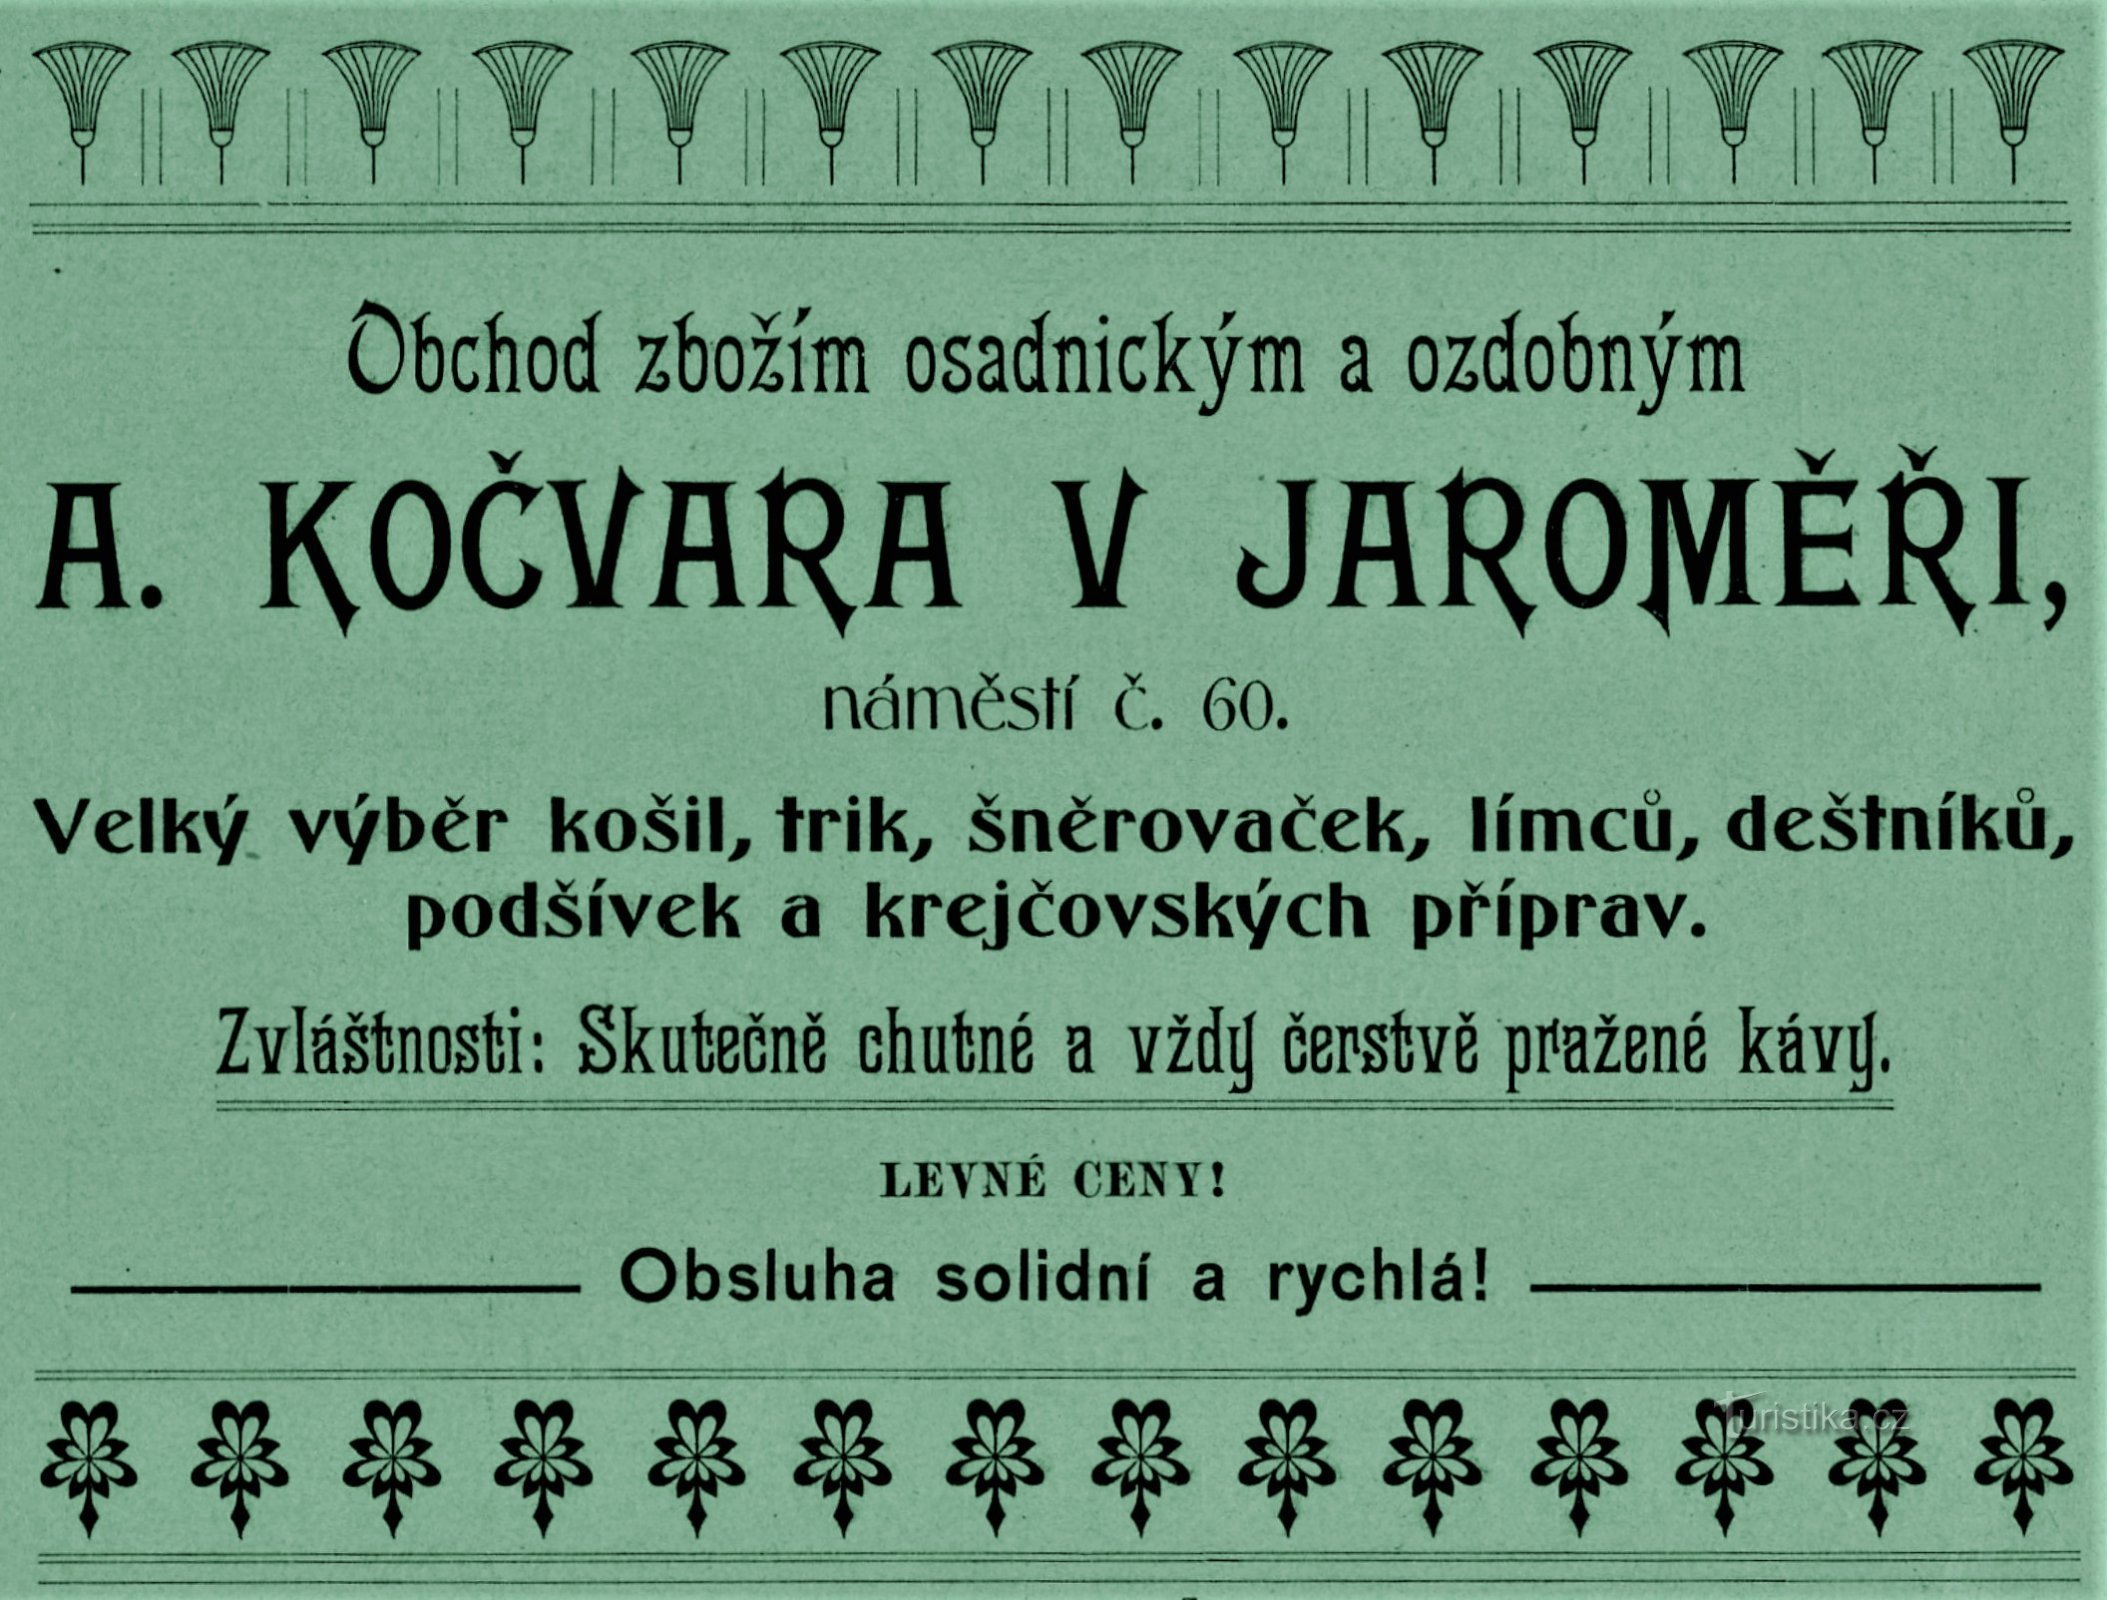 Anúncio contemporâneo da empresa A. Kočvara em Jaroměř de 1903